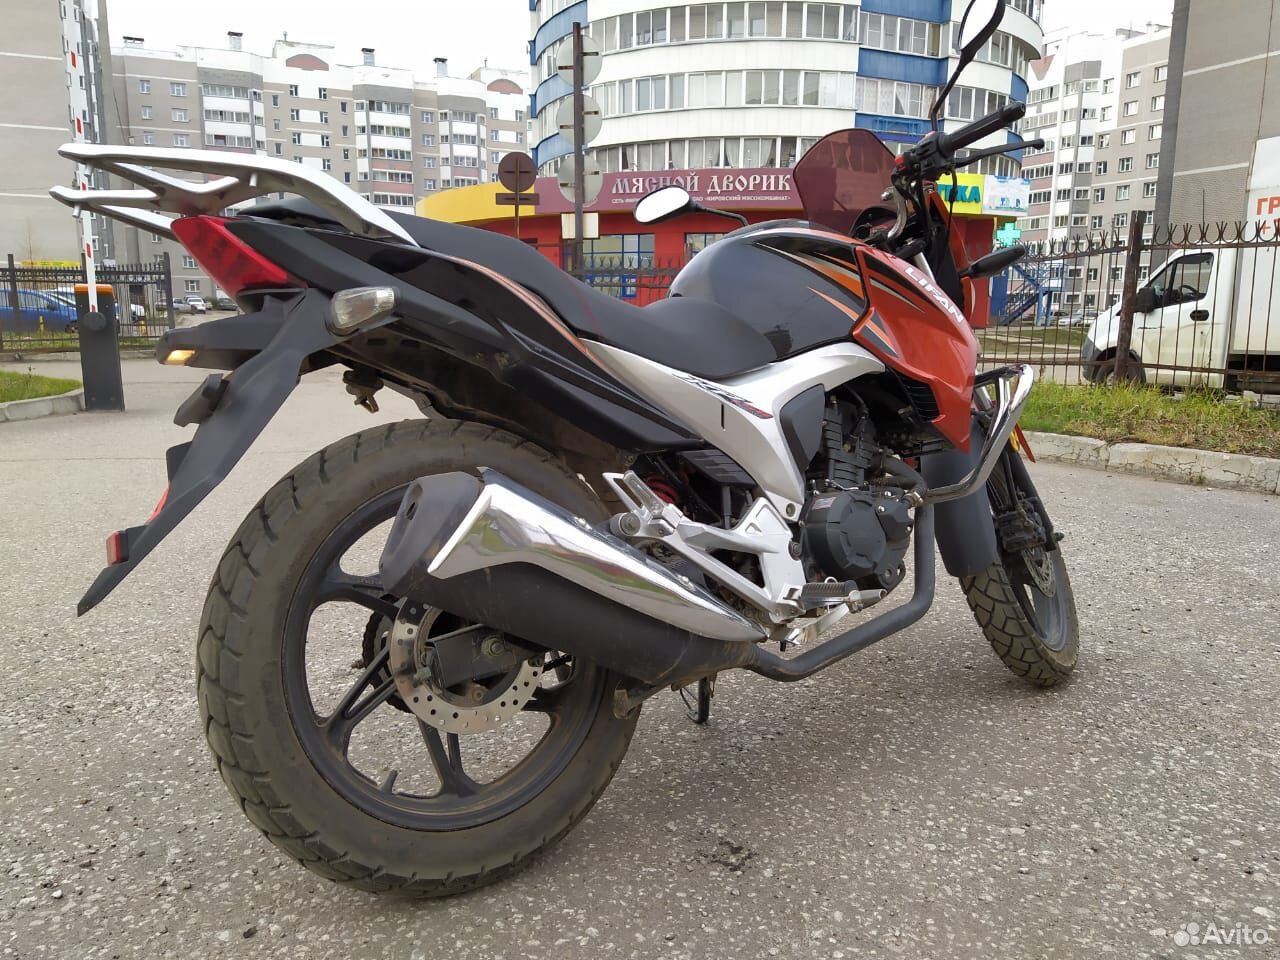  Мотоцикл lifan kp-150  89097165288 купить 2